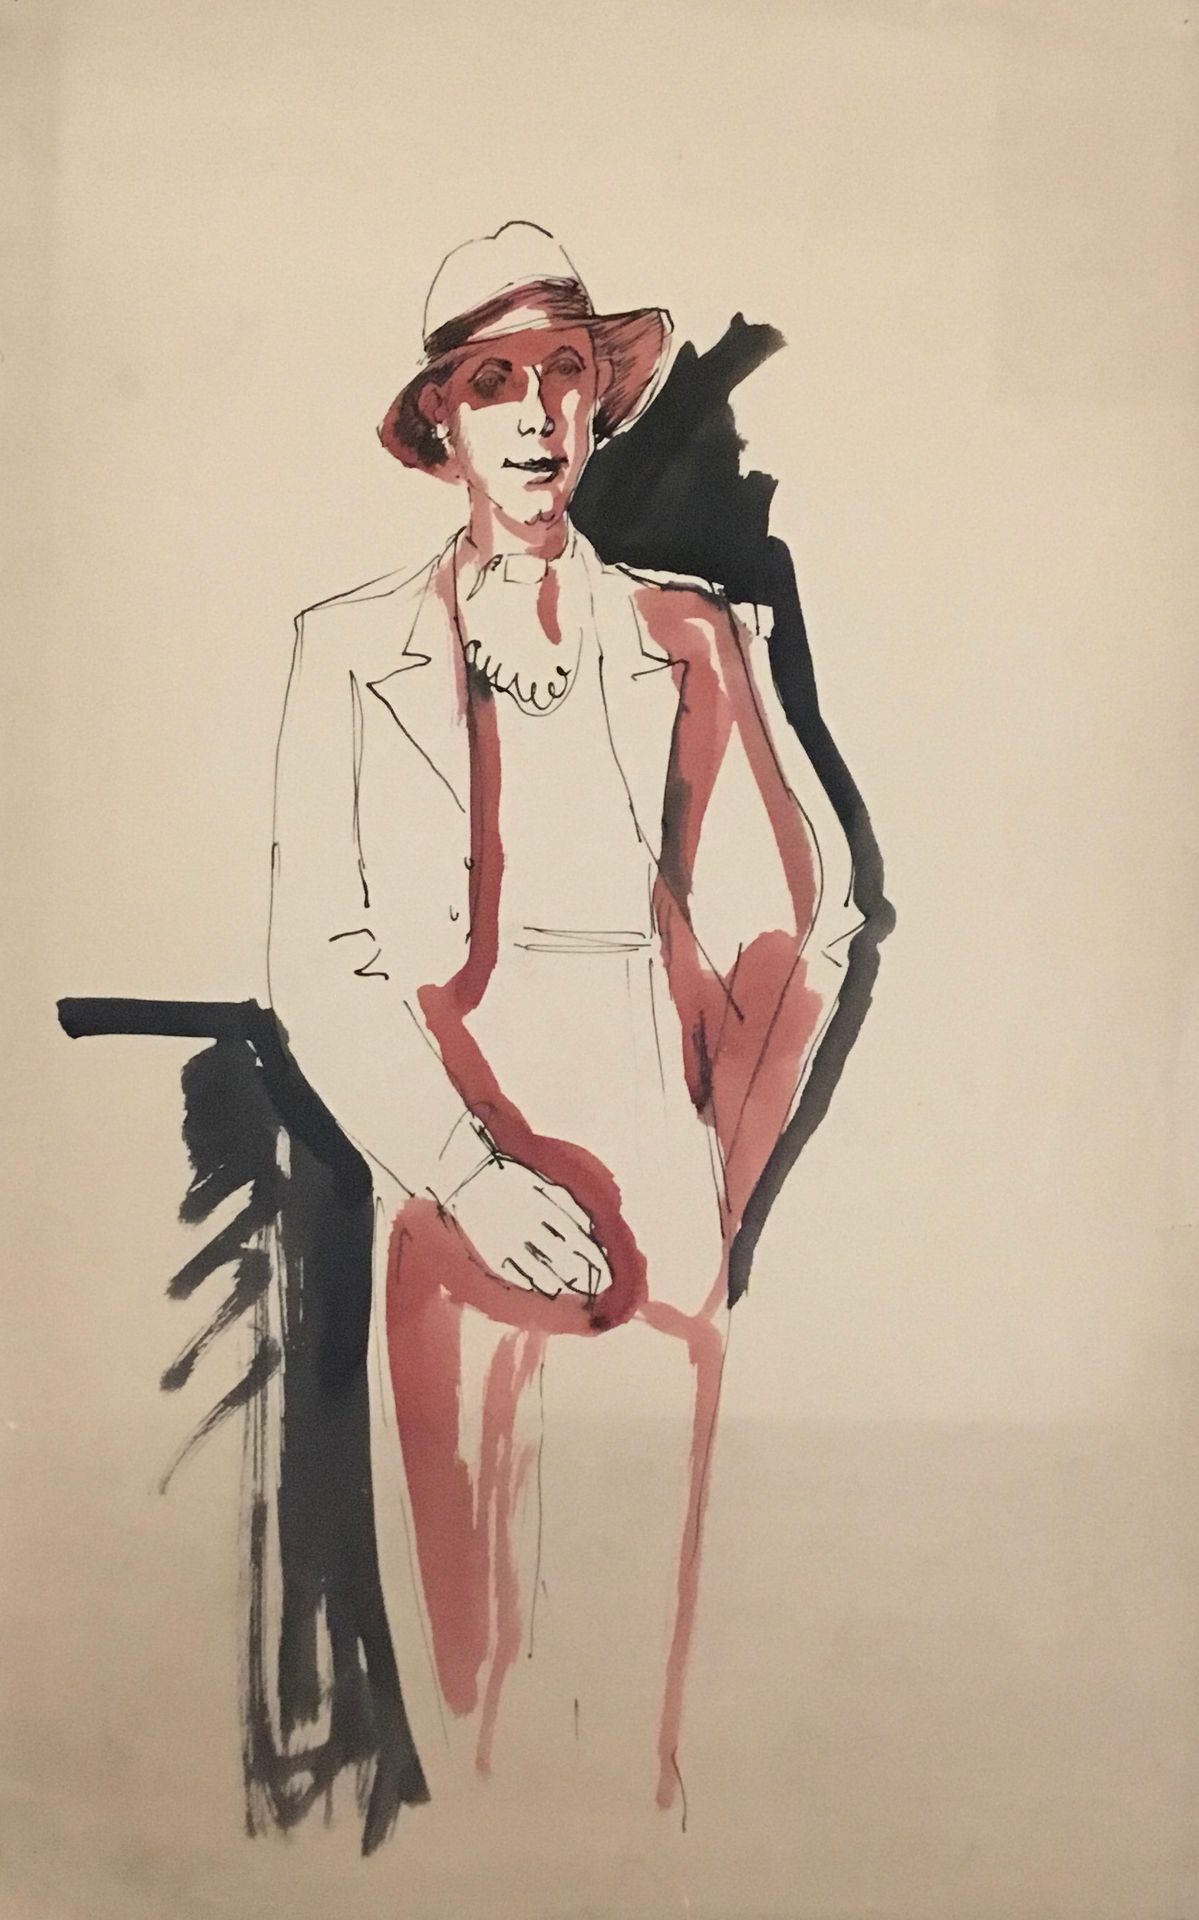 Null 孤独的人

马塞尔-艾梅的纸上水墨画肖像，约1950年。 

46 x 28 cm